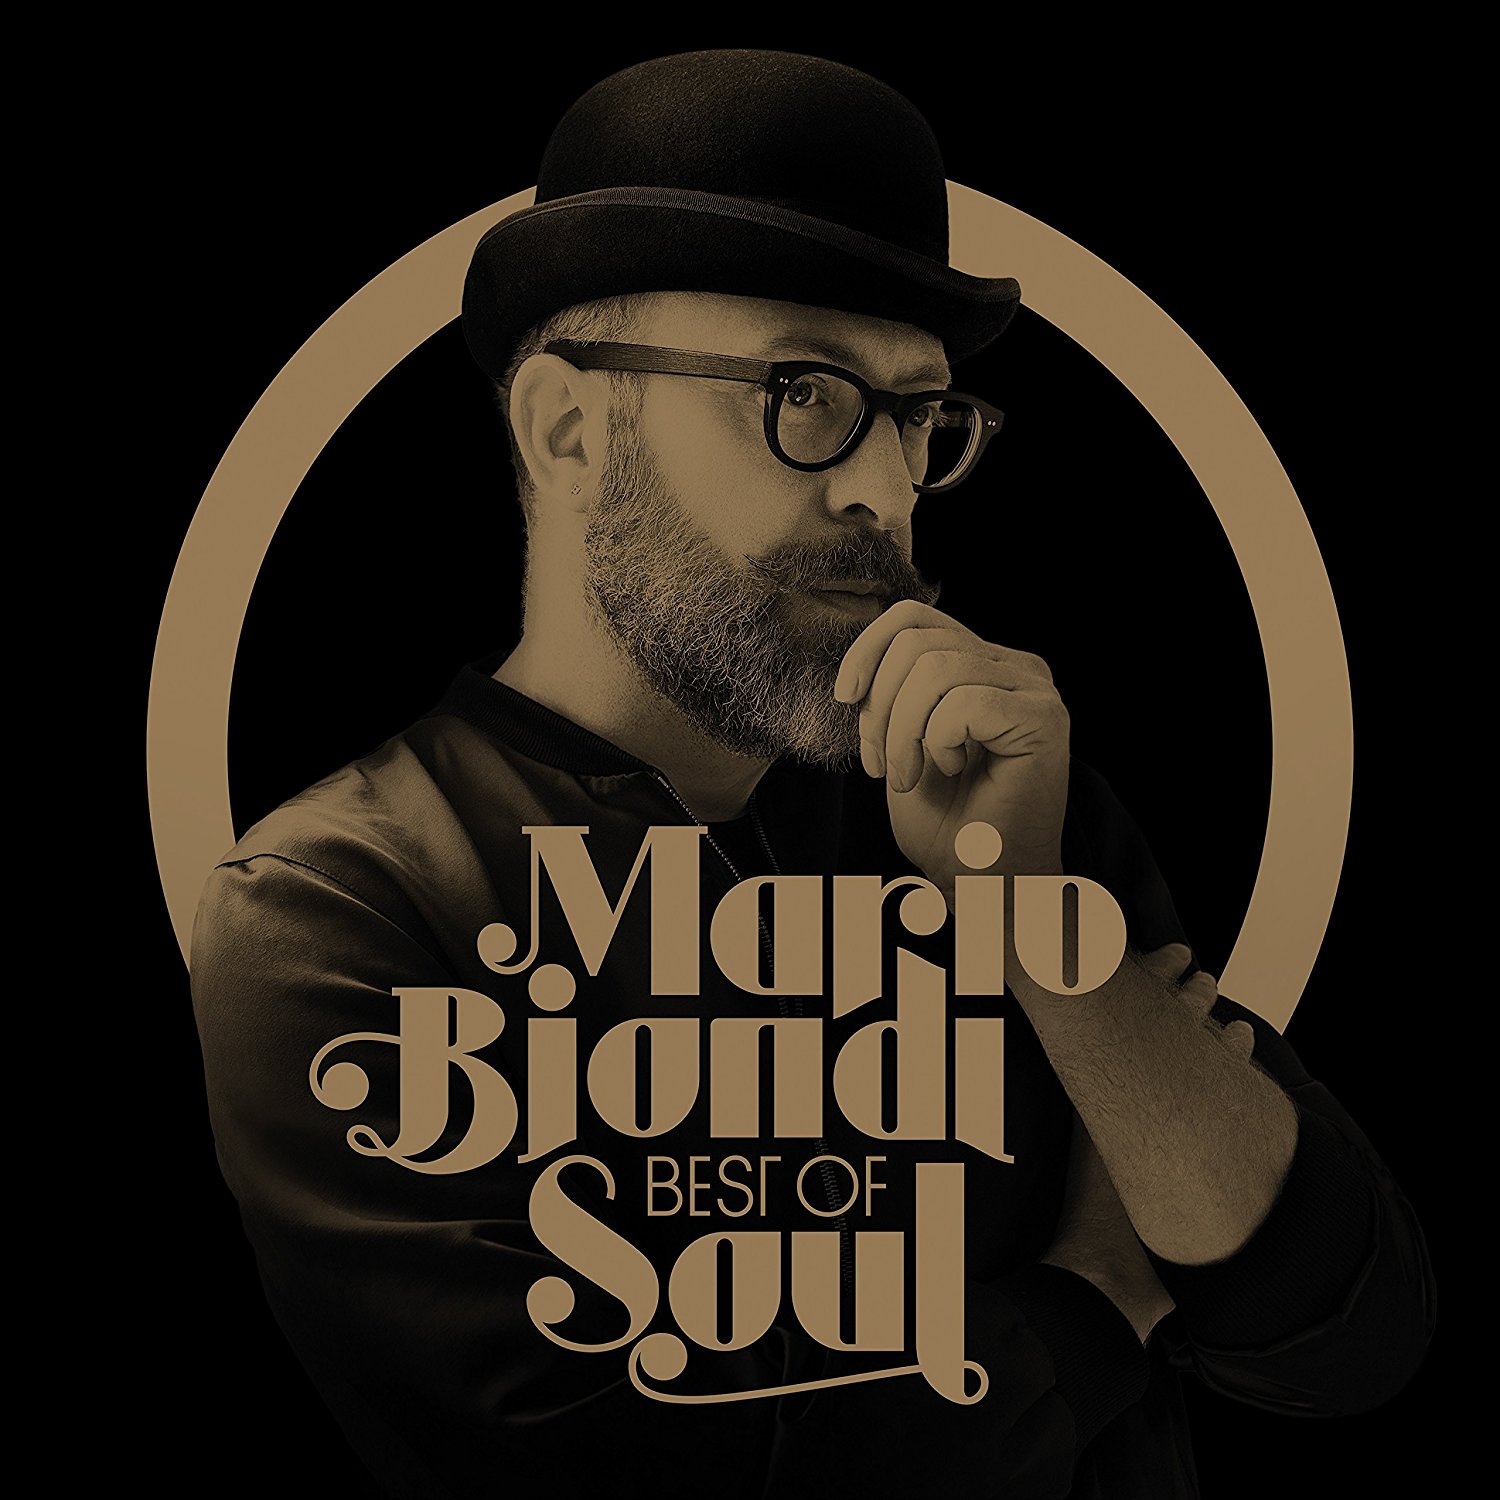 Audio Cd Mario Biondi - Best Of Soul (2 Cd) NUOVO SIGILLATO, EDIZIONE DEL 18/11/2016 SUBITO DISPONIBILE